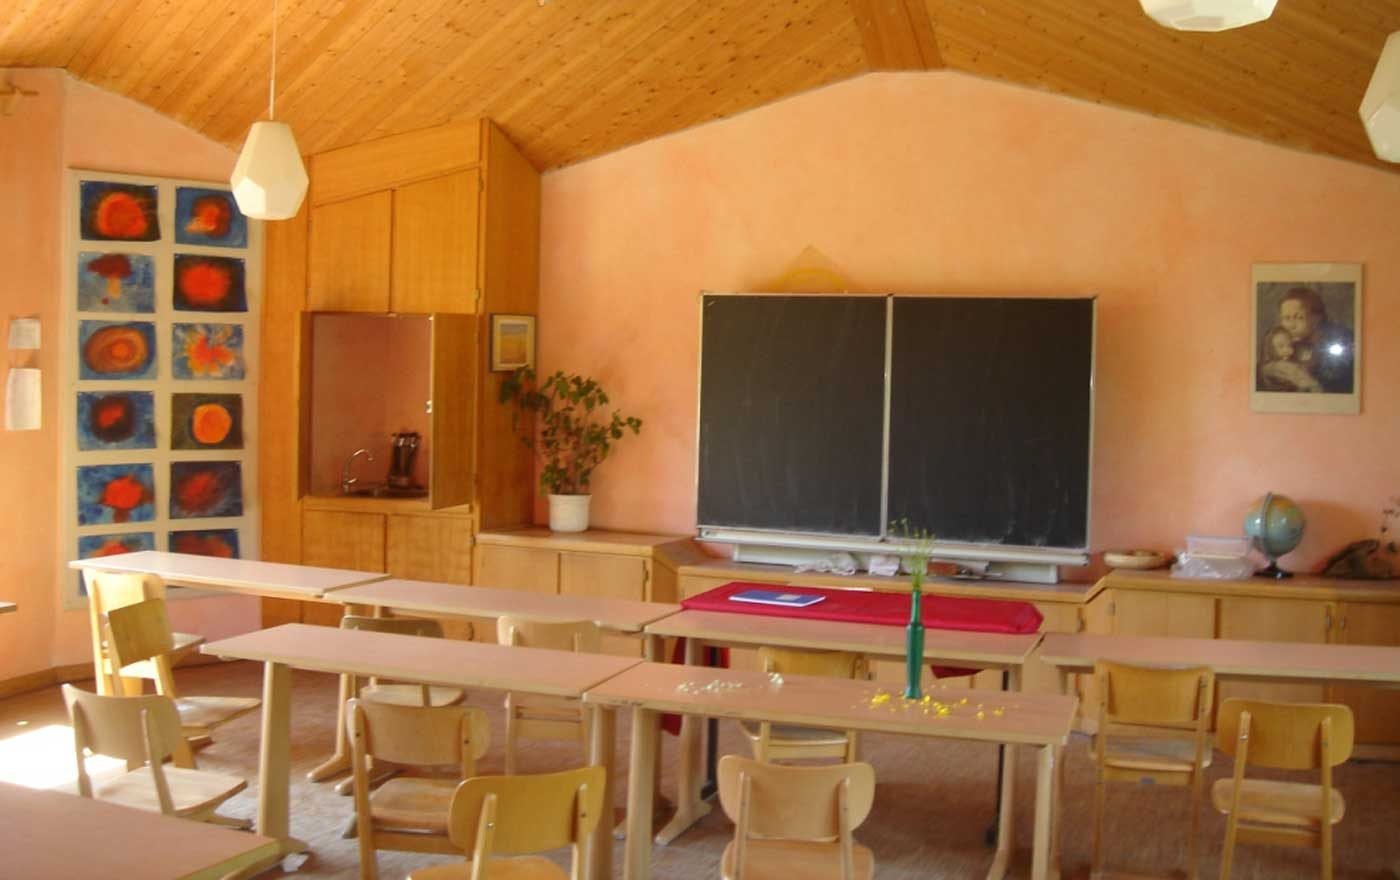 An Schulen besteht erhöhter Bedarf an reformpädagogisch ausgebildeten Lehrerinnen und Lehrern. Foto: wikimedia/Florian K.